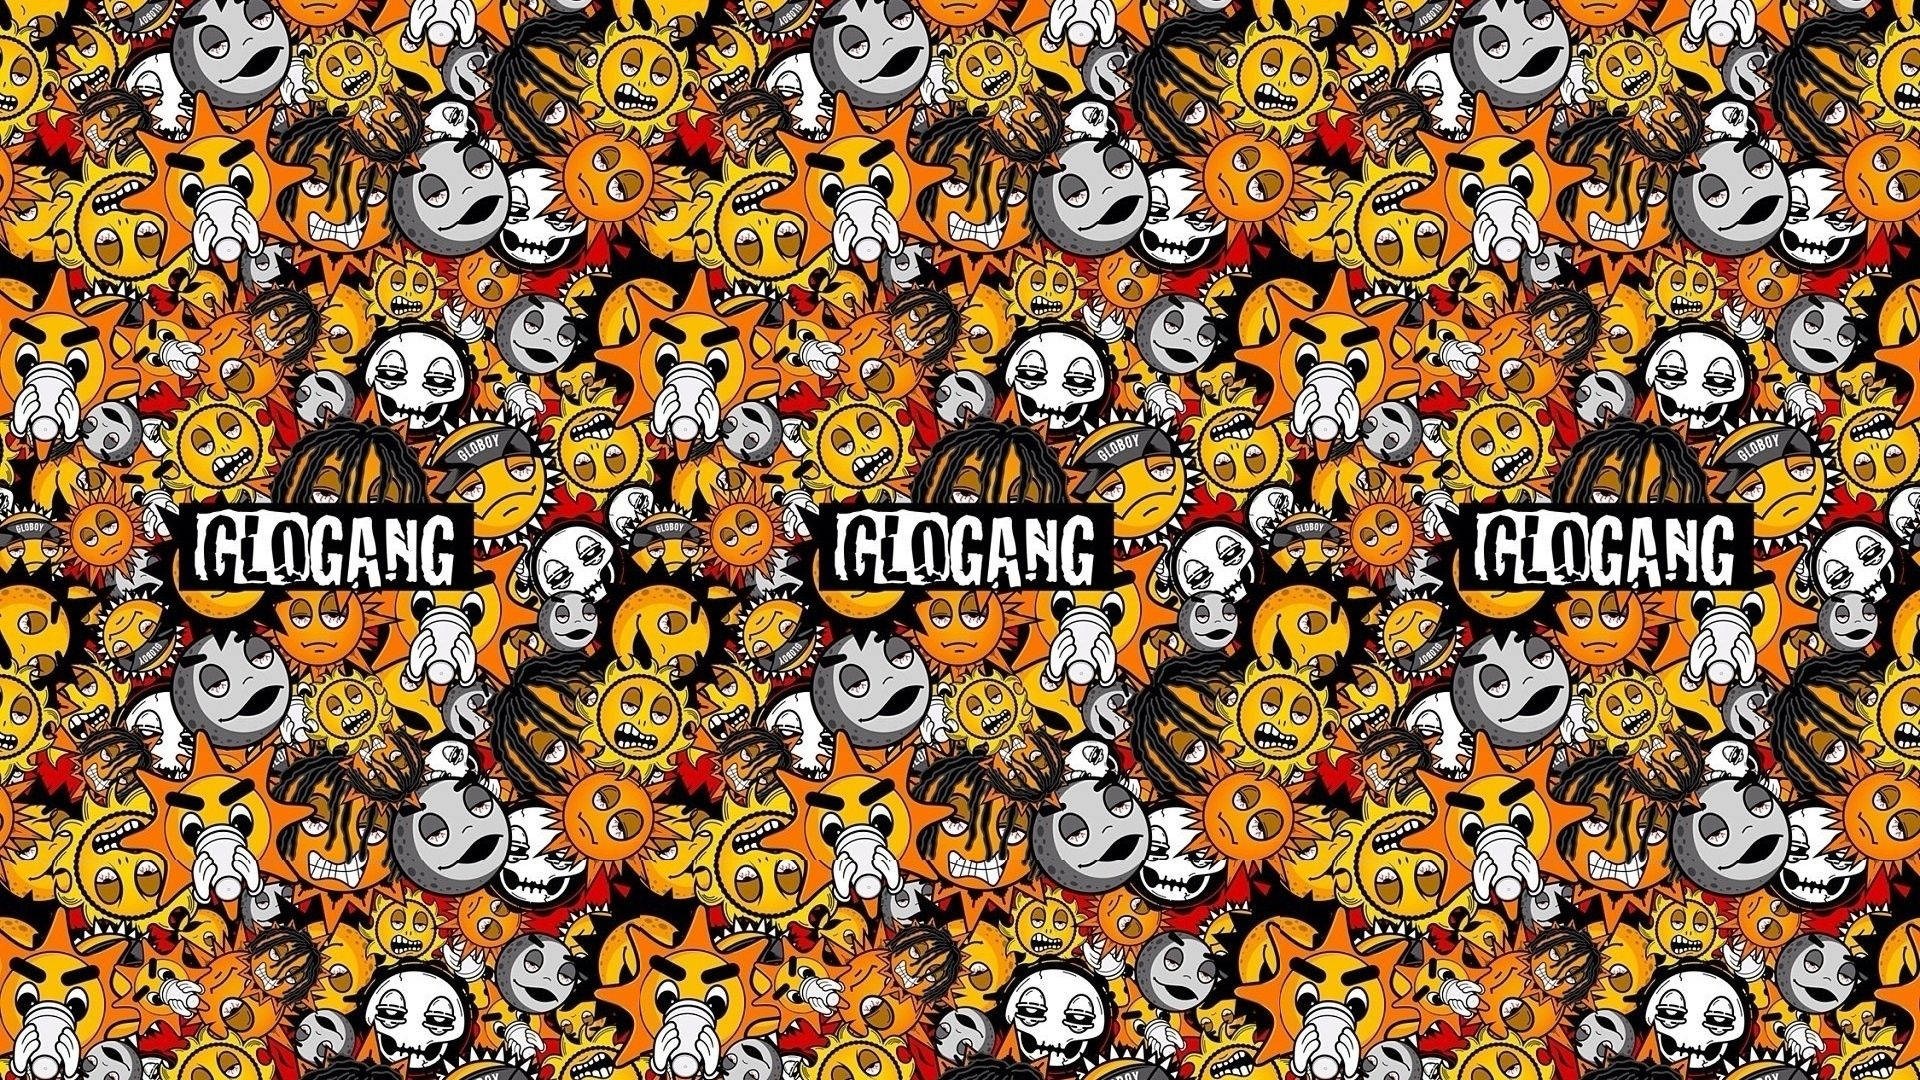 Glo Gang 3 - Fans Joji™ Store